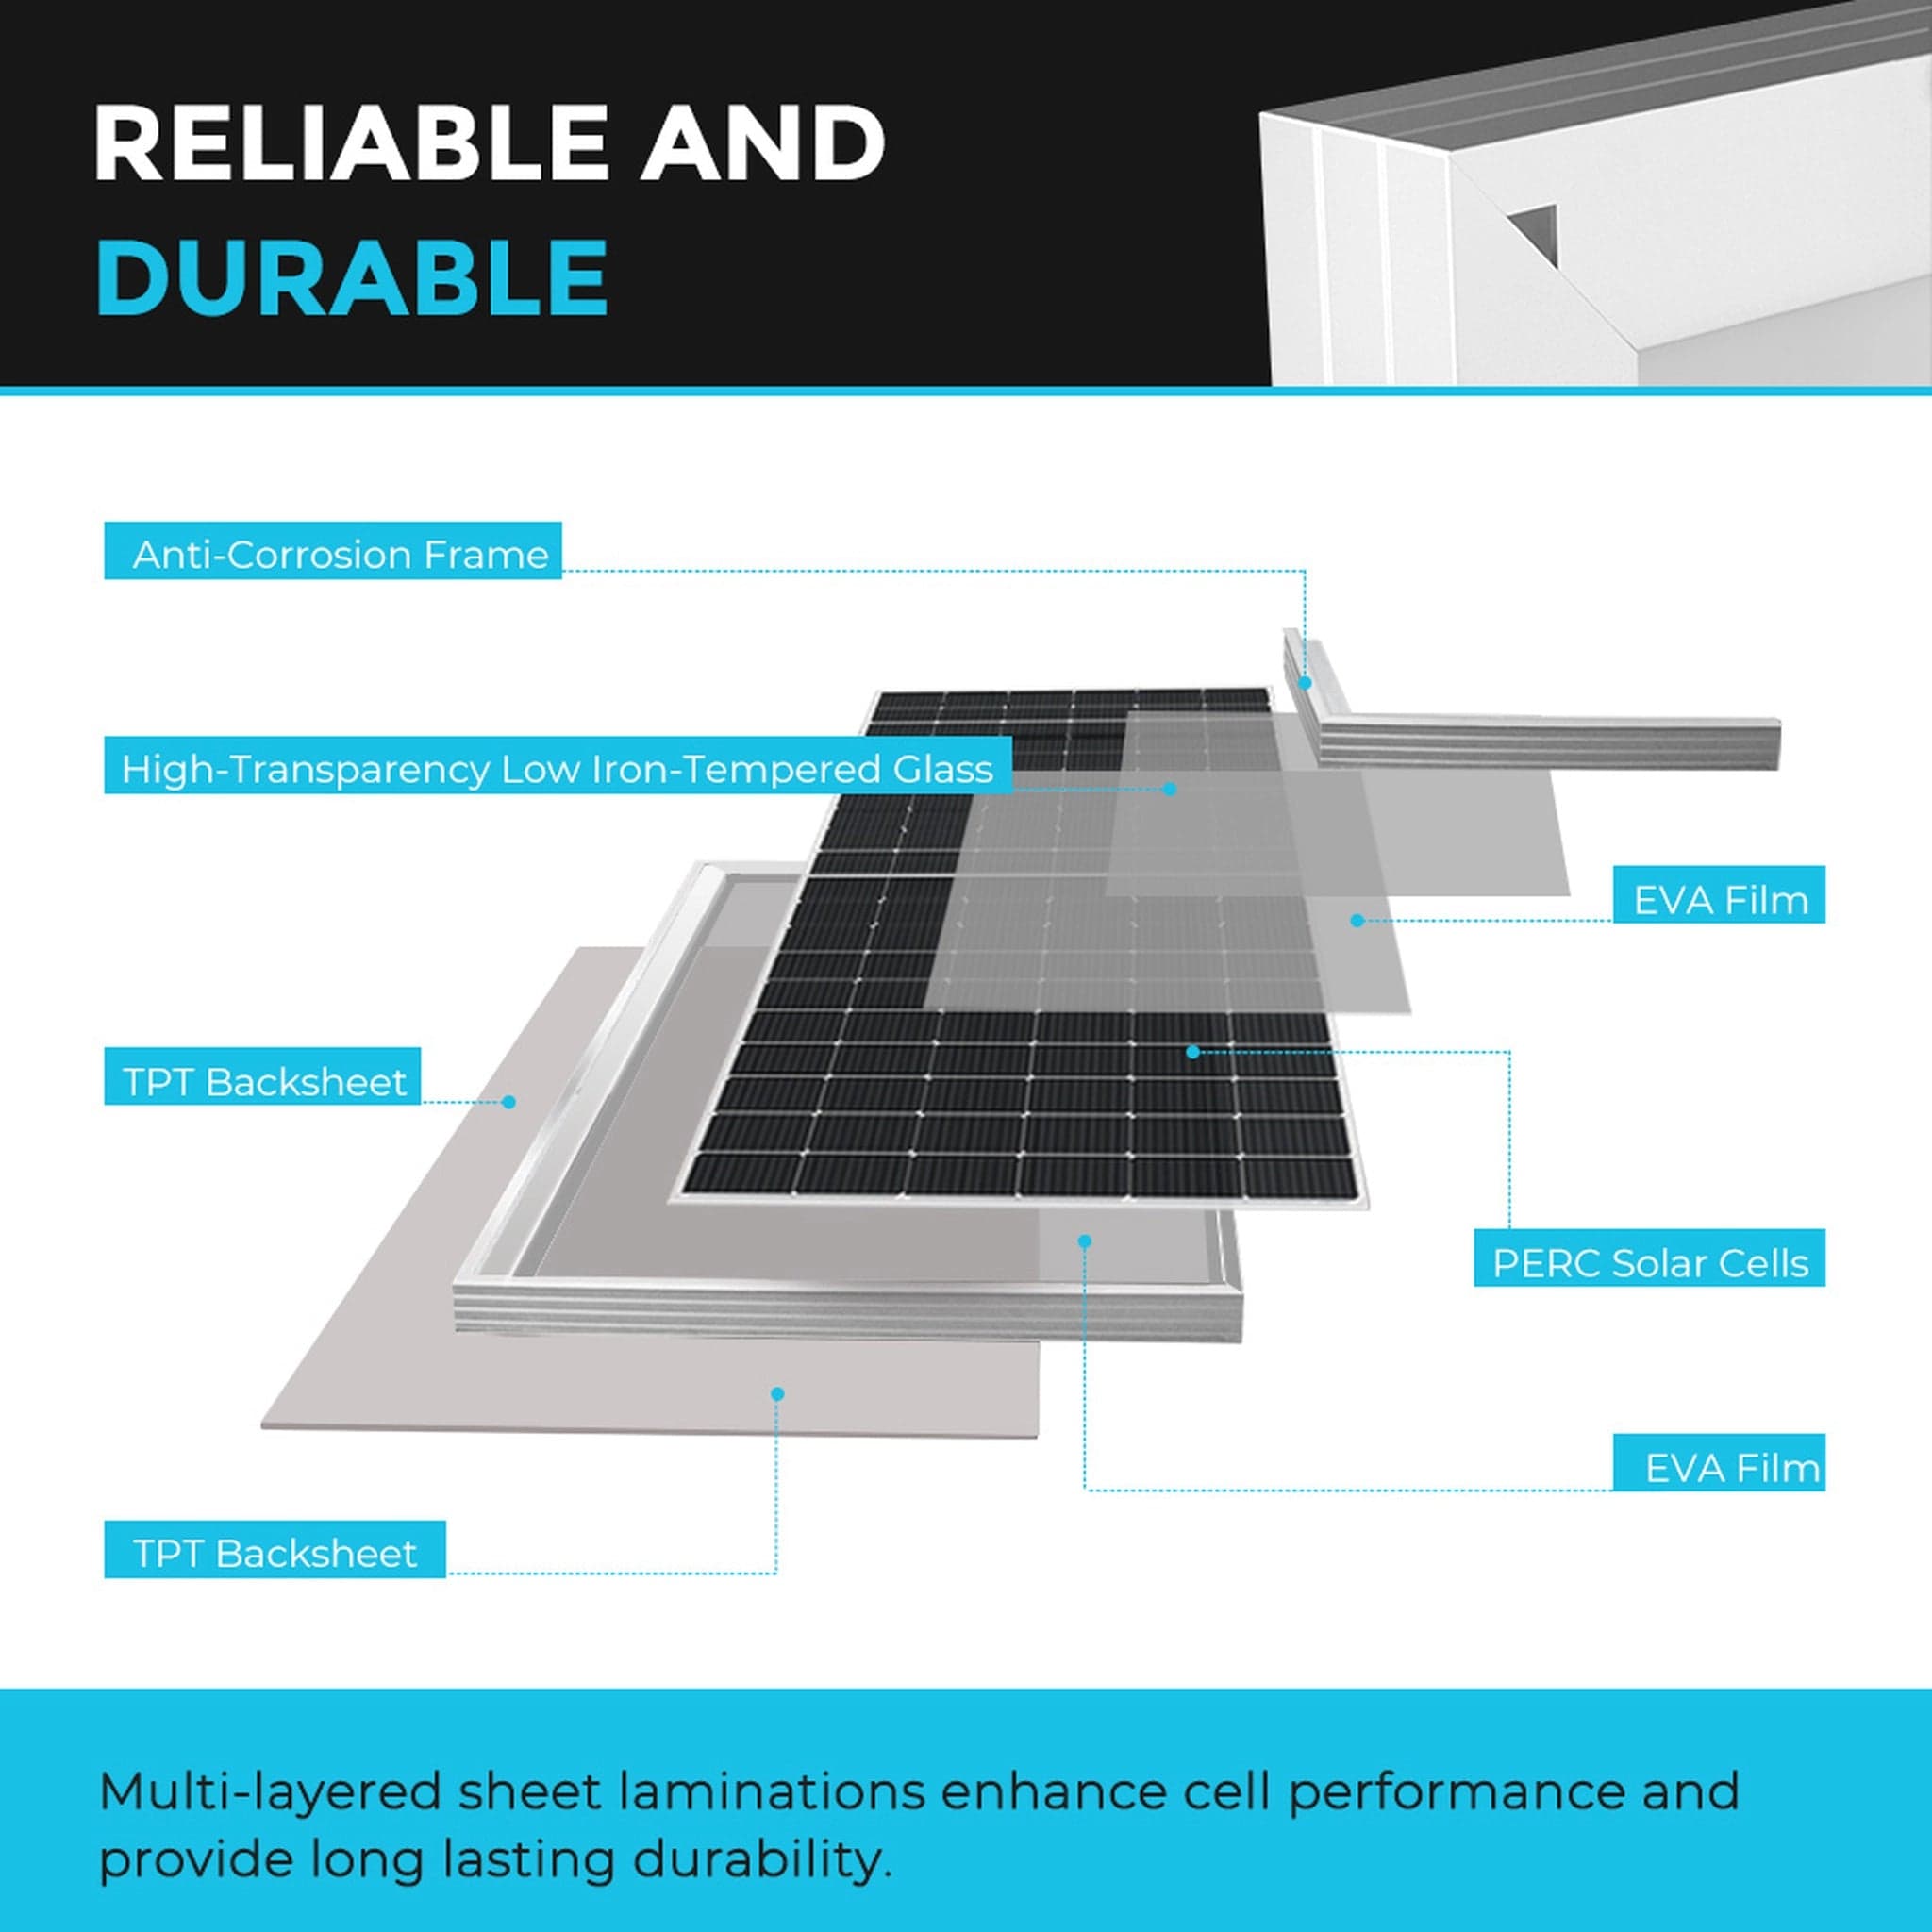 Renogy 2x 450W Monocrystalline Solar Panel